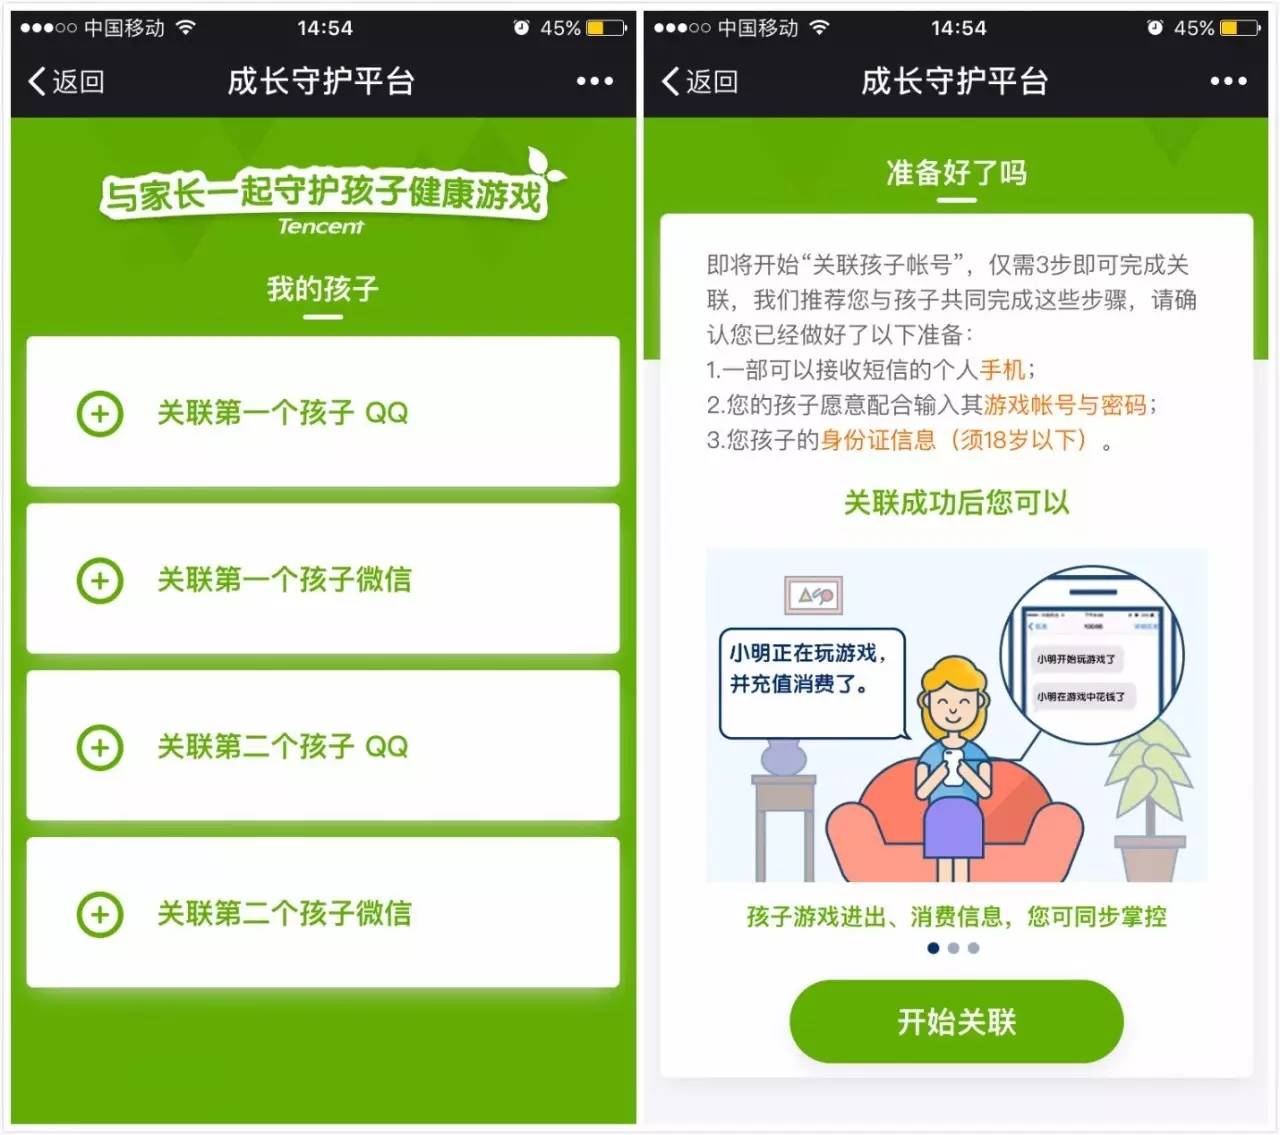 上海共享单车标准：年龄12-70、身高1.45以上；易到离职员工爆料：欠款是事实 | 早报